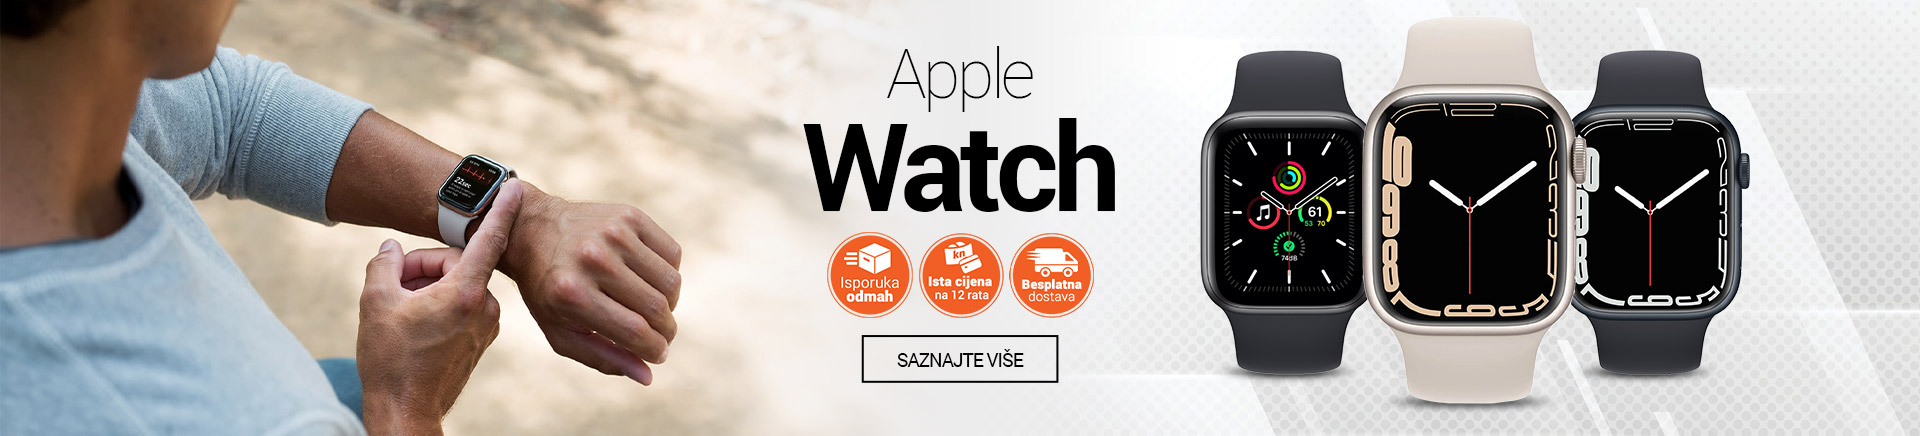 Apple Watch pametni satovi